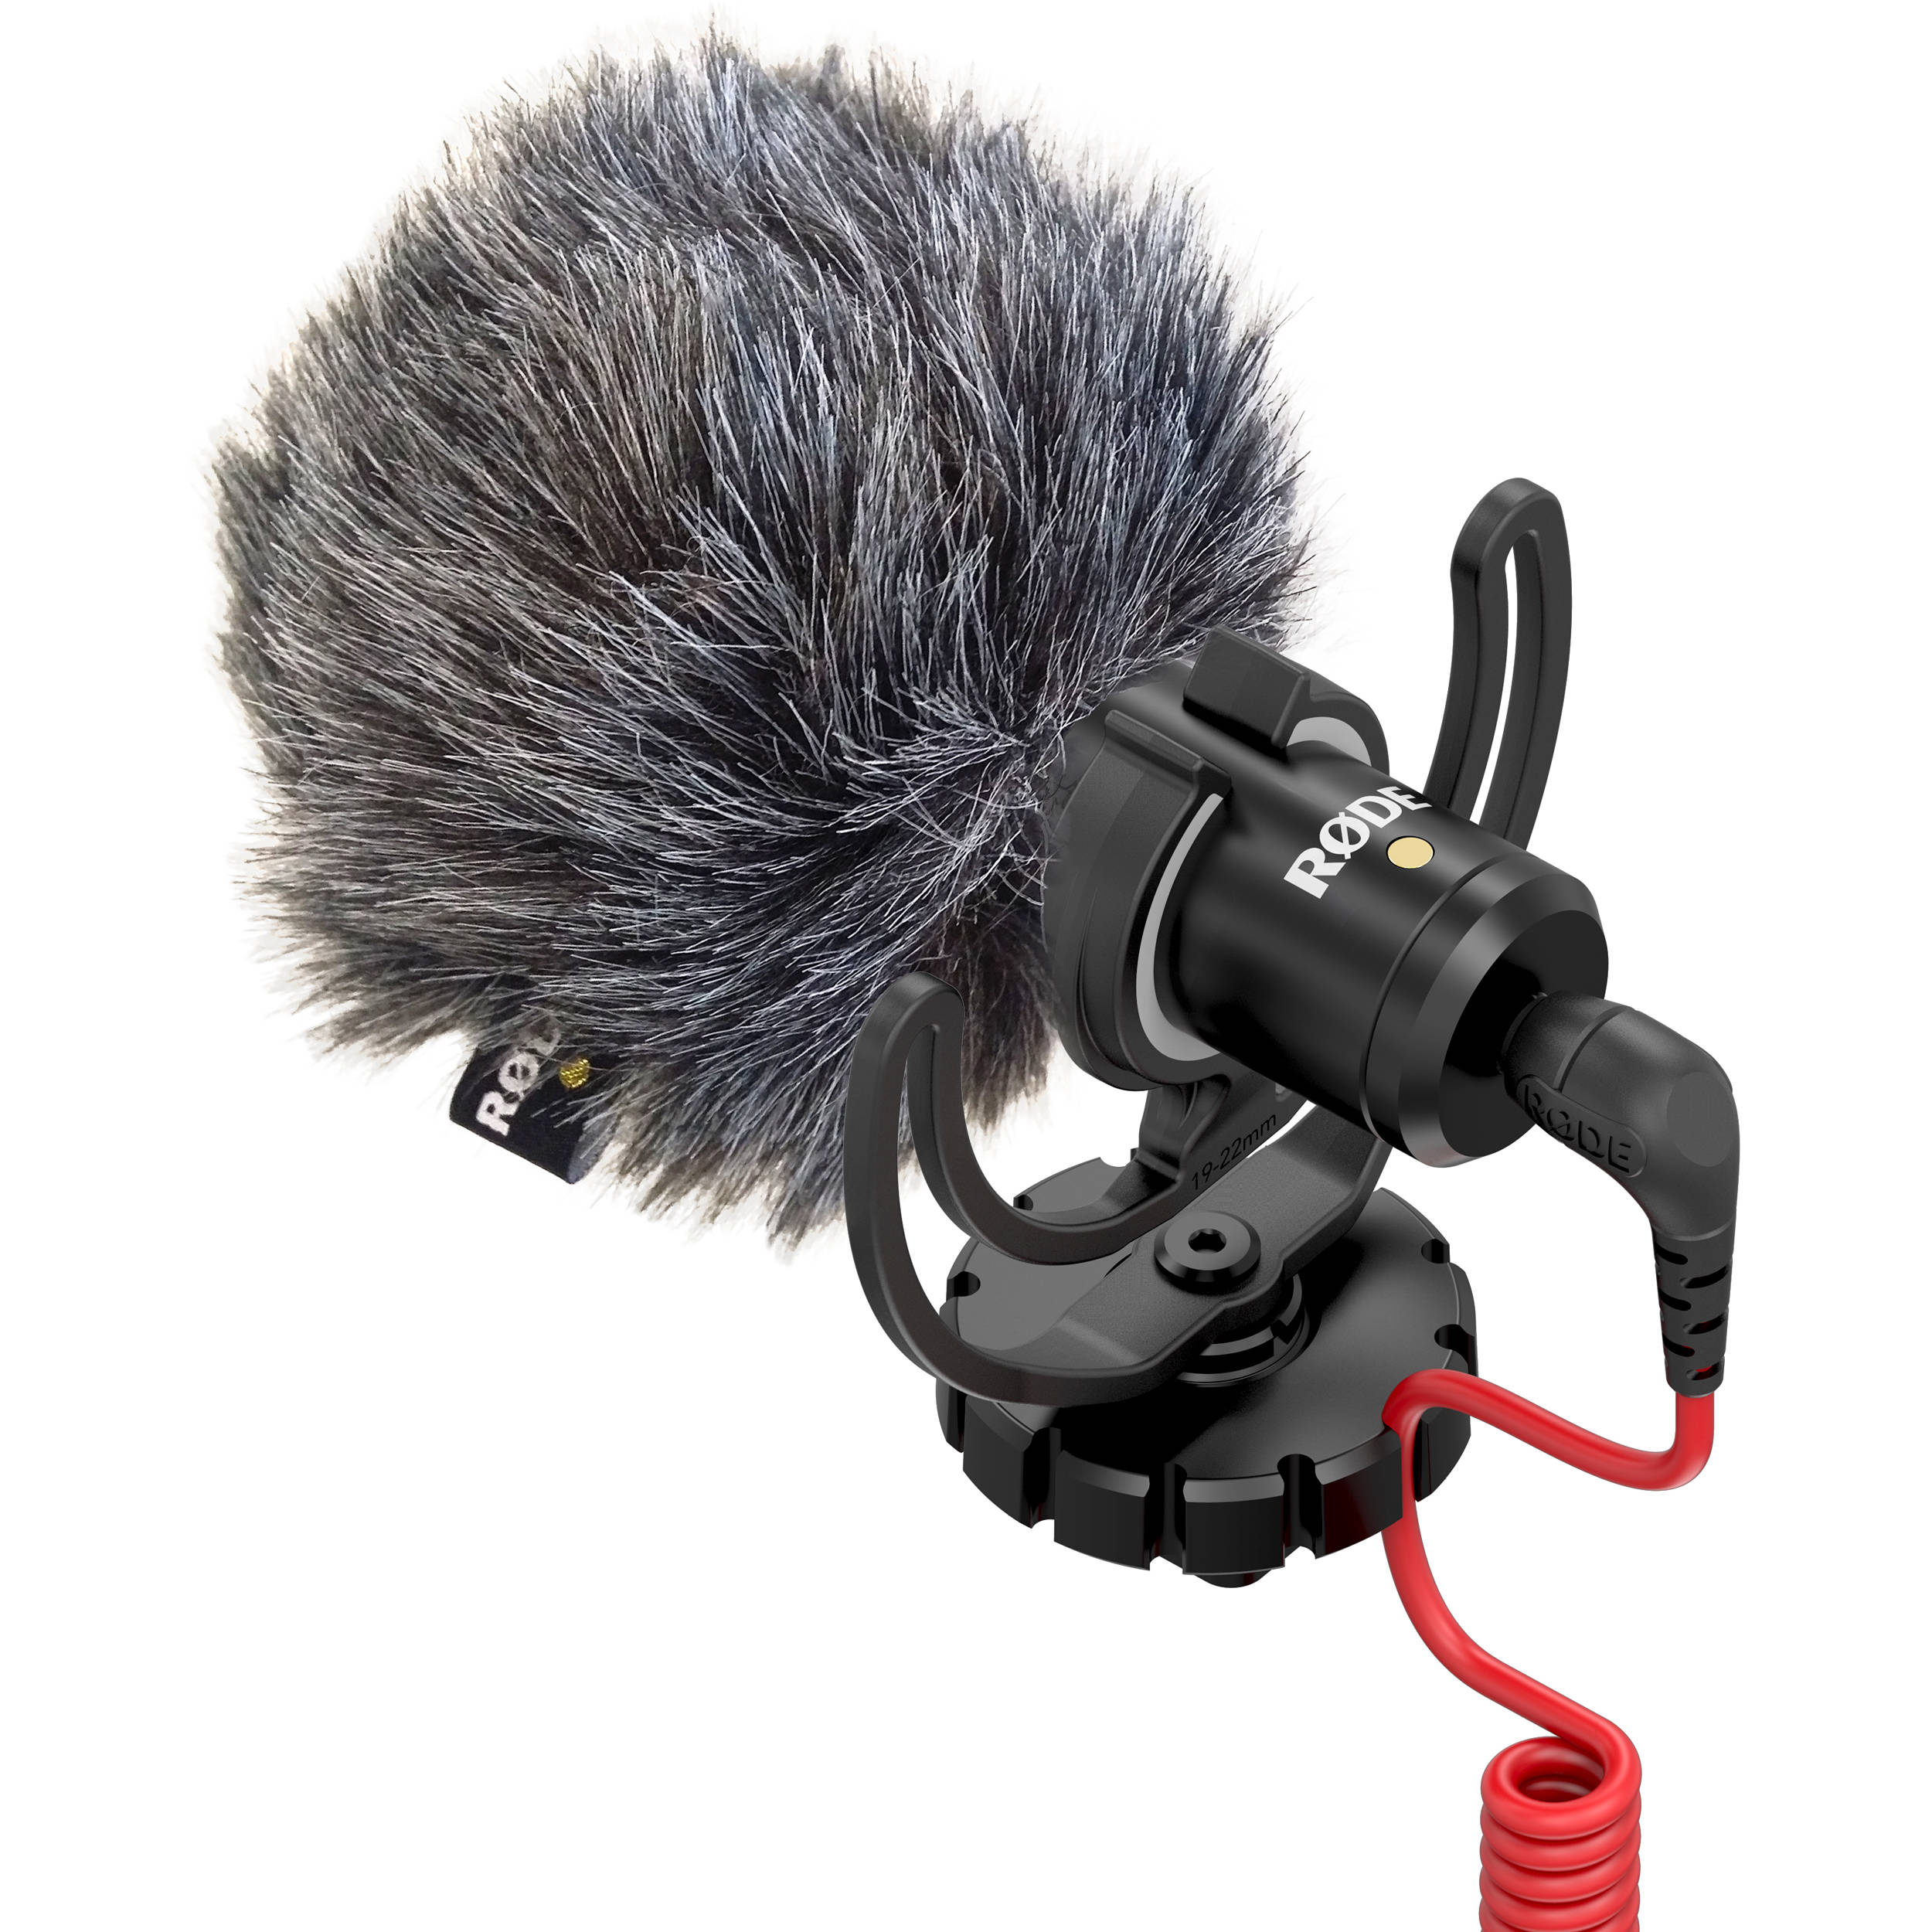 ik wil bijkeuken presentatie Rode VideoMicro Microphone Hire / Buy - Camera Hire Australia